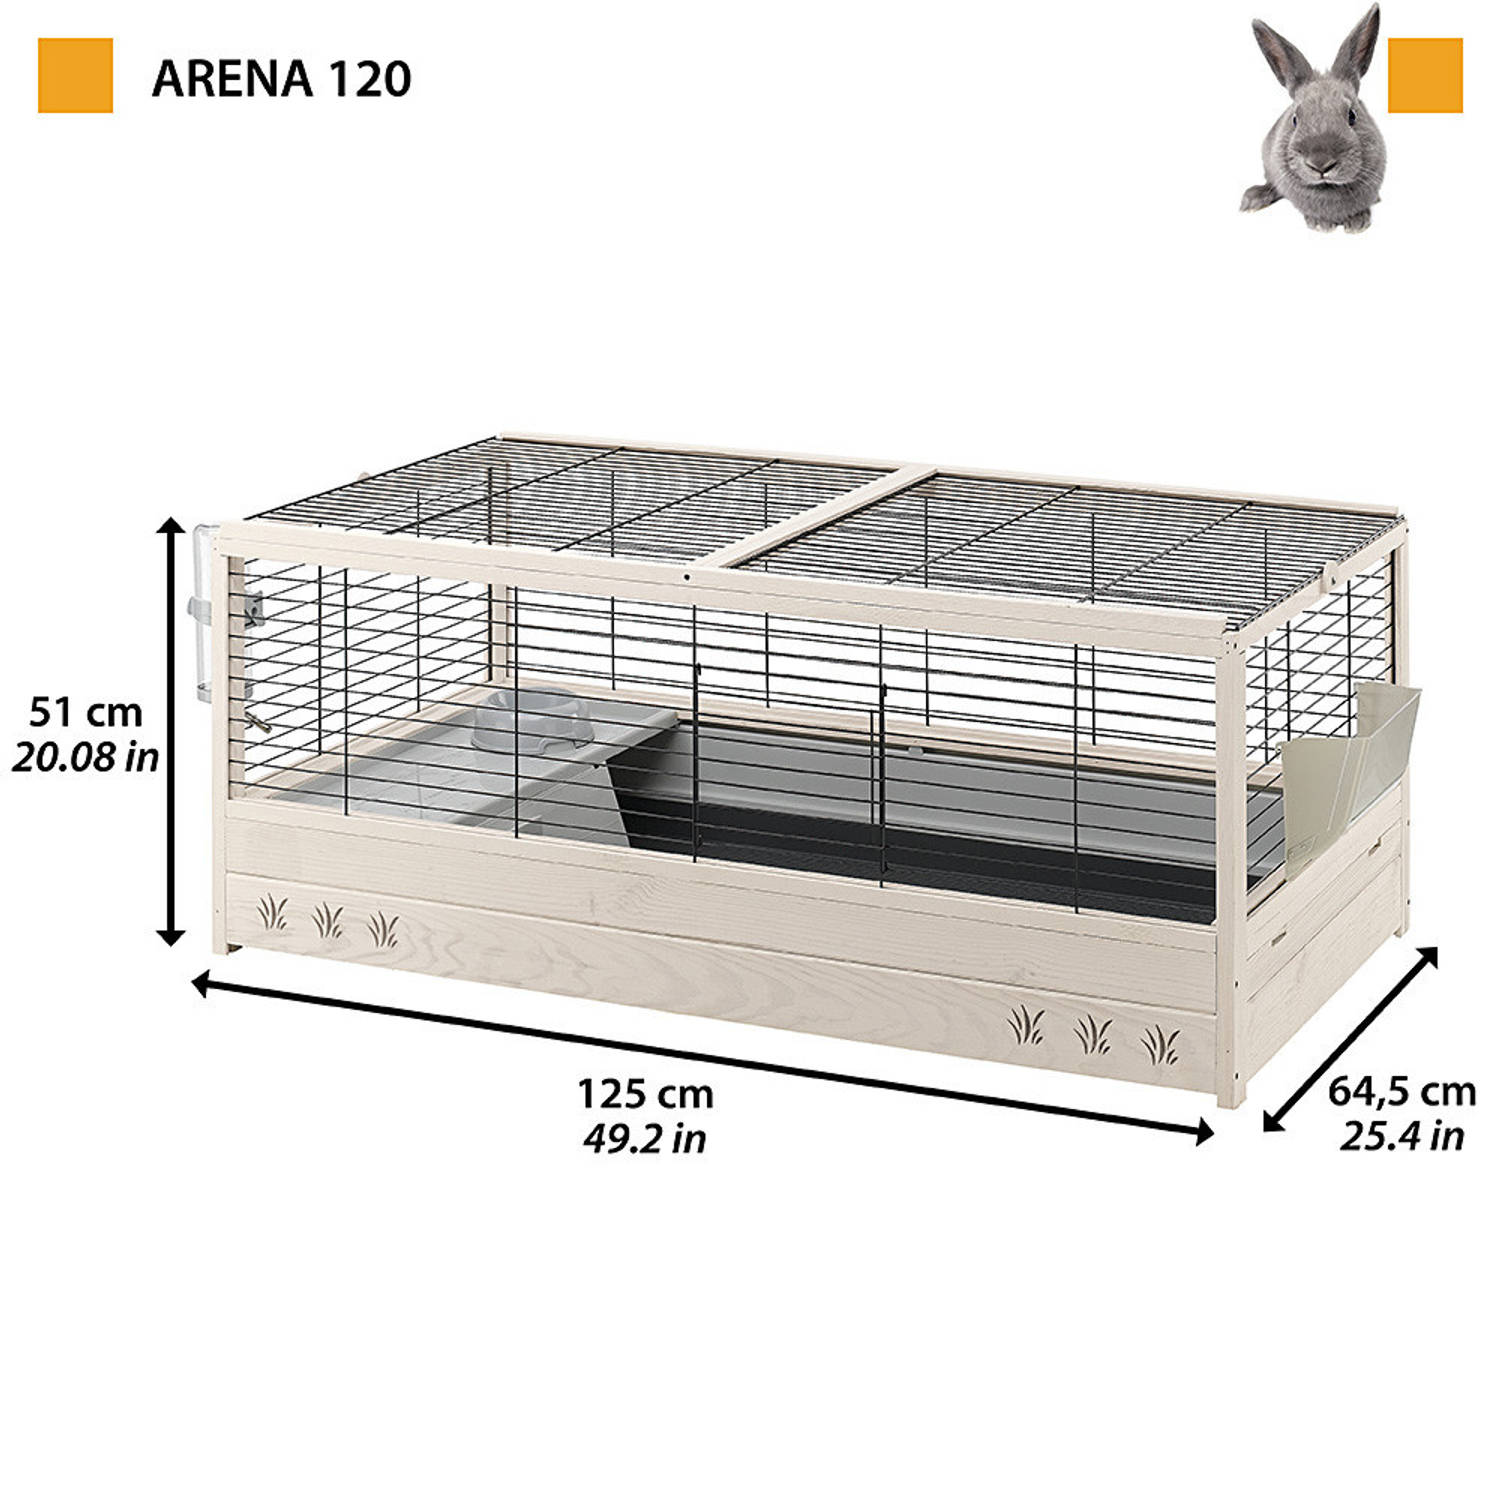 Groenten argument Reusachtig Ferplast konijnenhok Arena 120 hout 125 x 64,5 cm naturel/grijs | Blokker